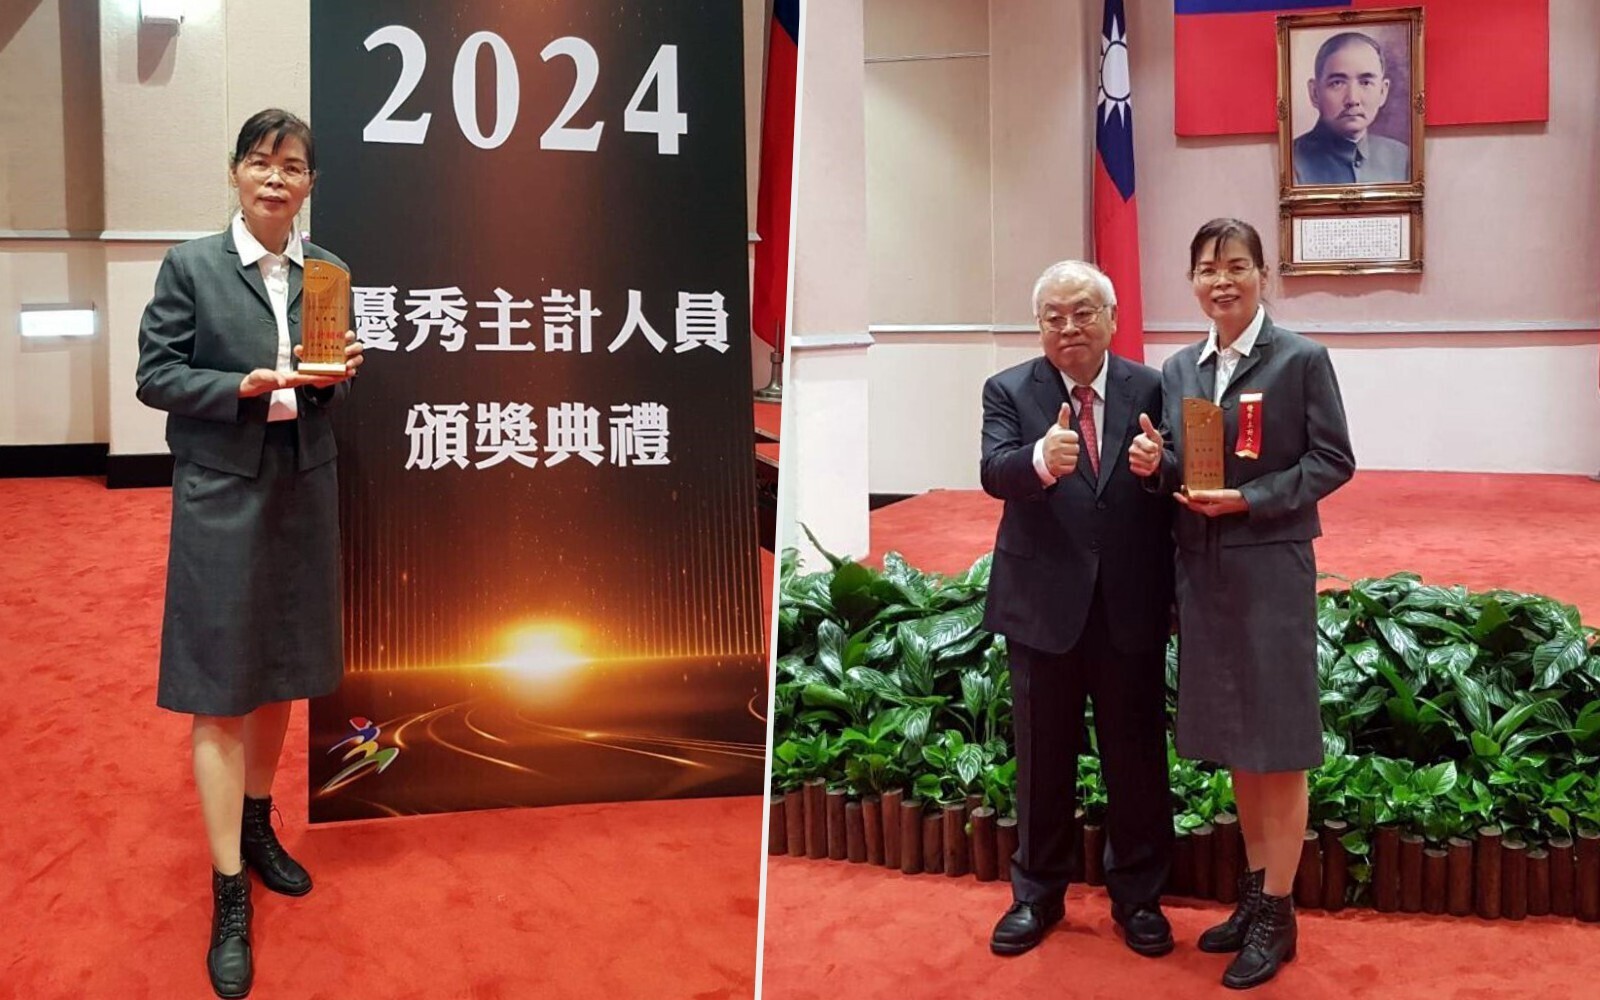 東華主計室潘秀娥組長獲頒112年優秀主計人員獎